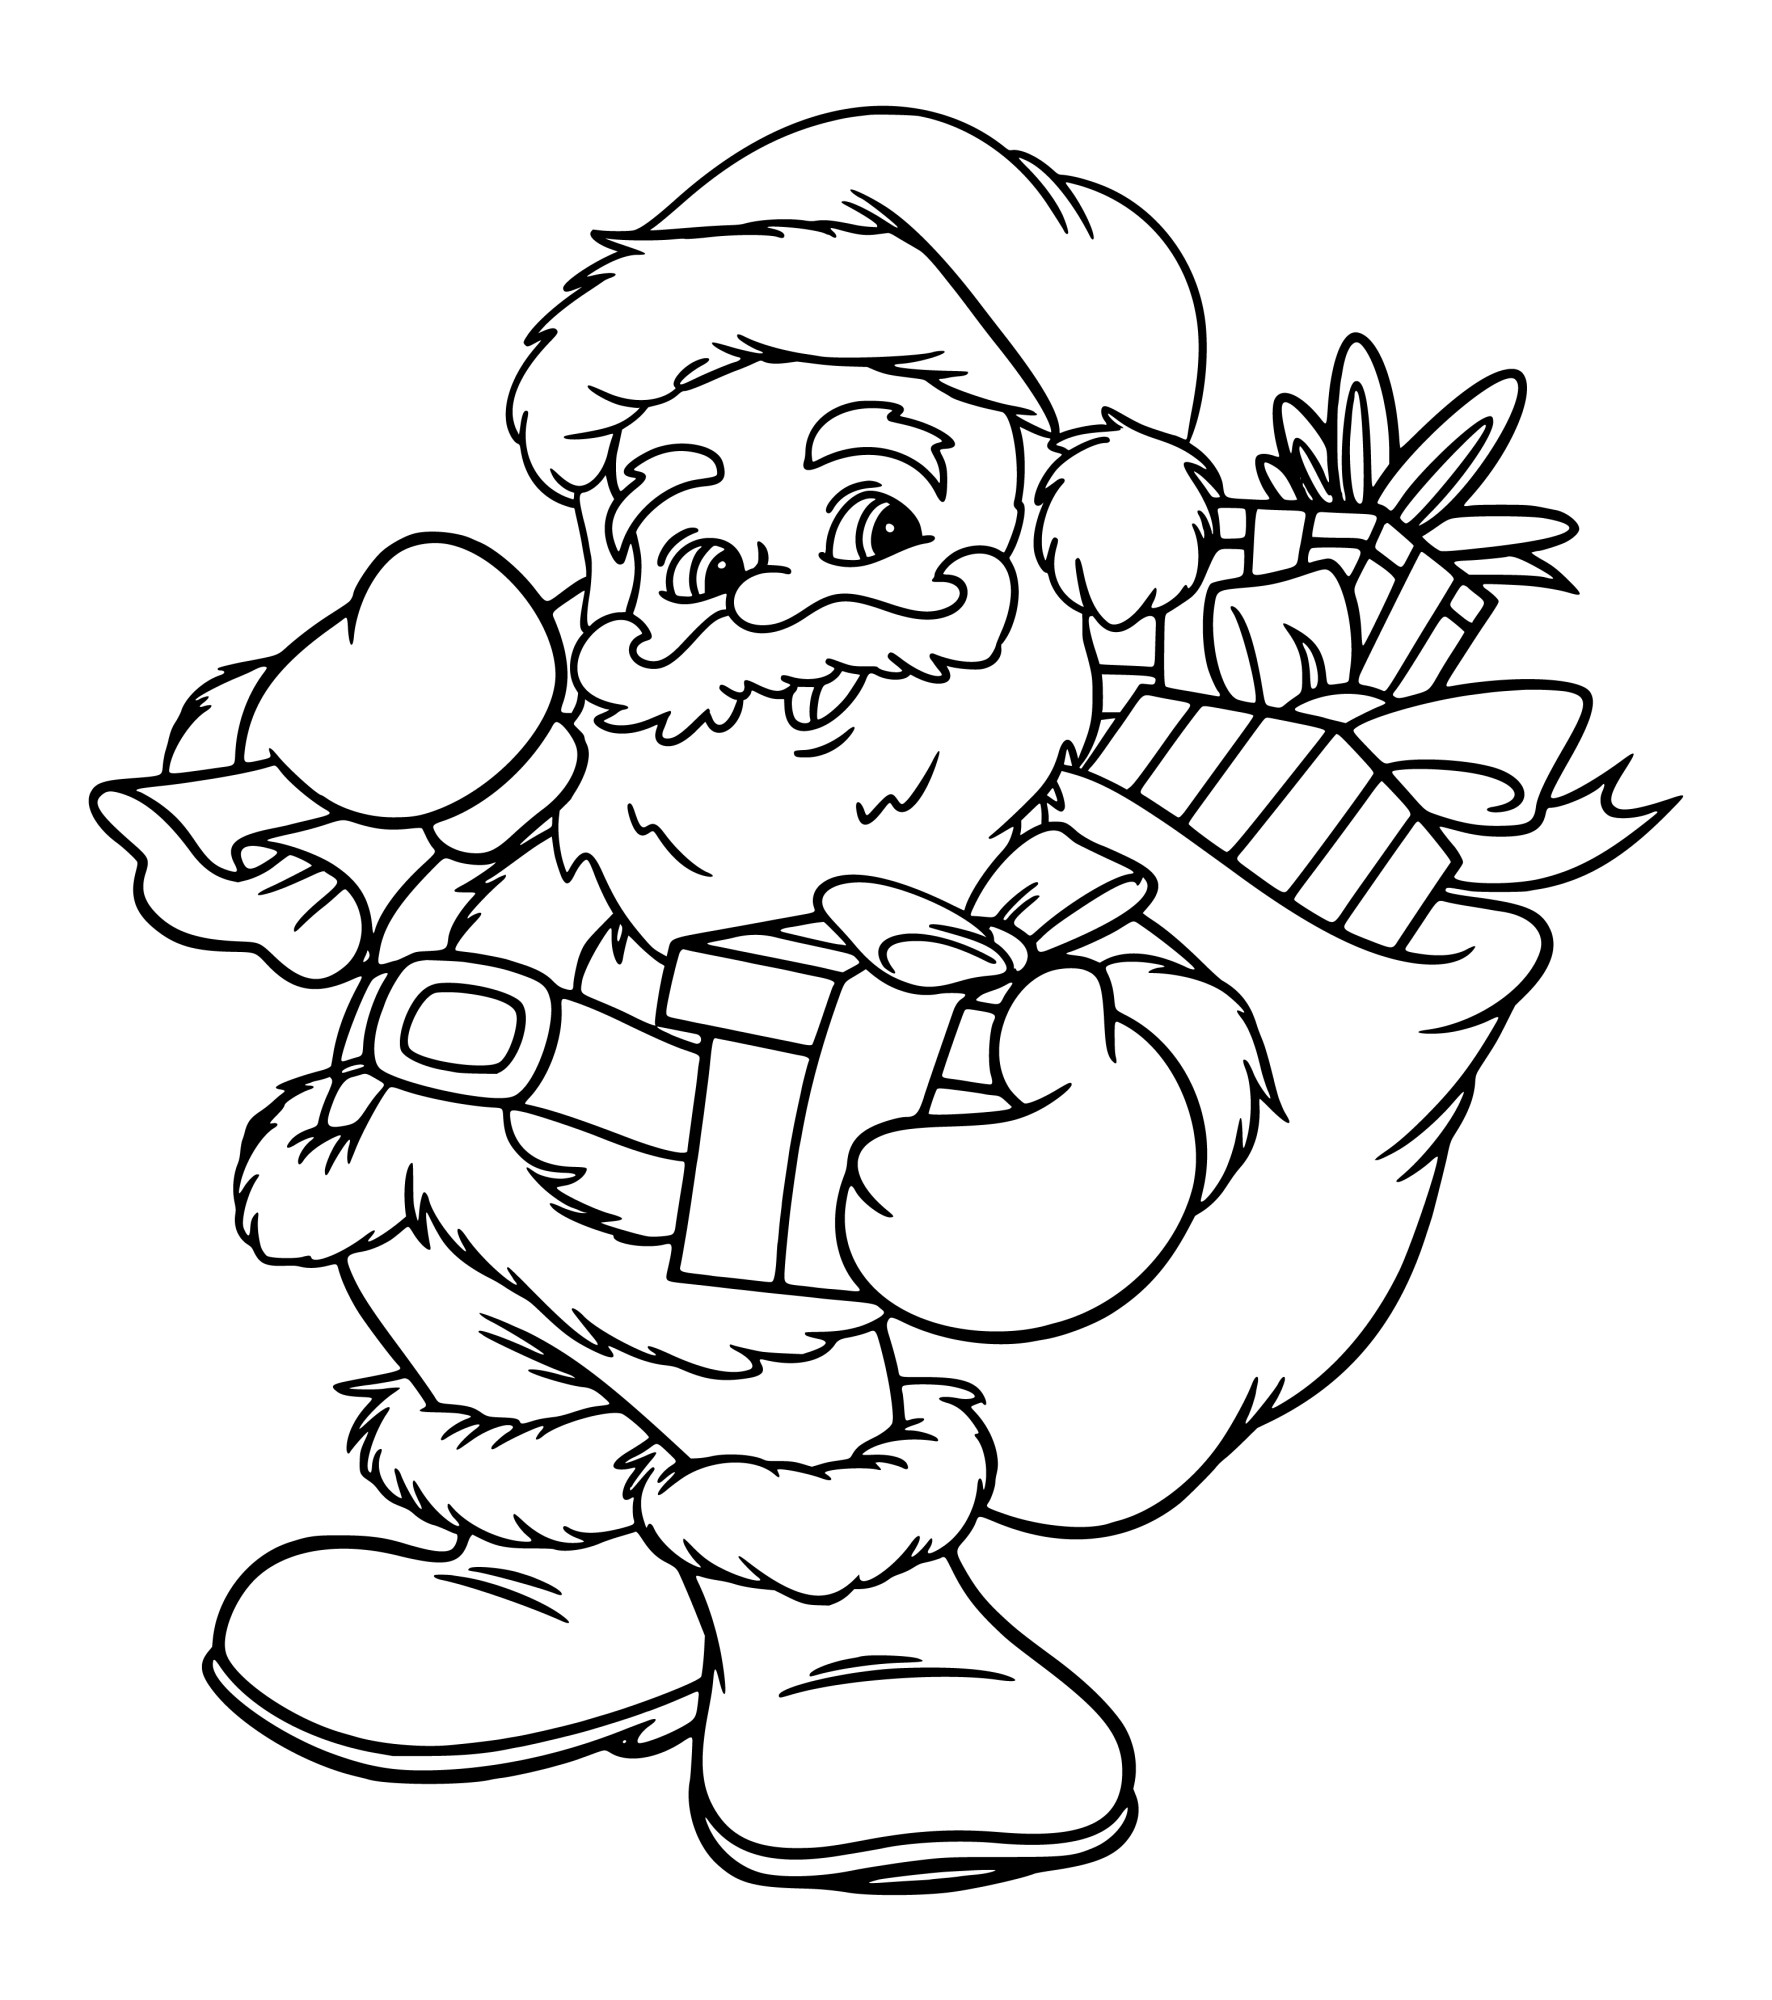 Раскраска для детей: улыбающийся дед мороз с мешком подарков на плече